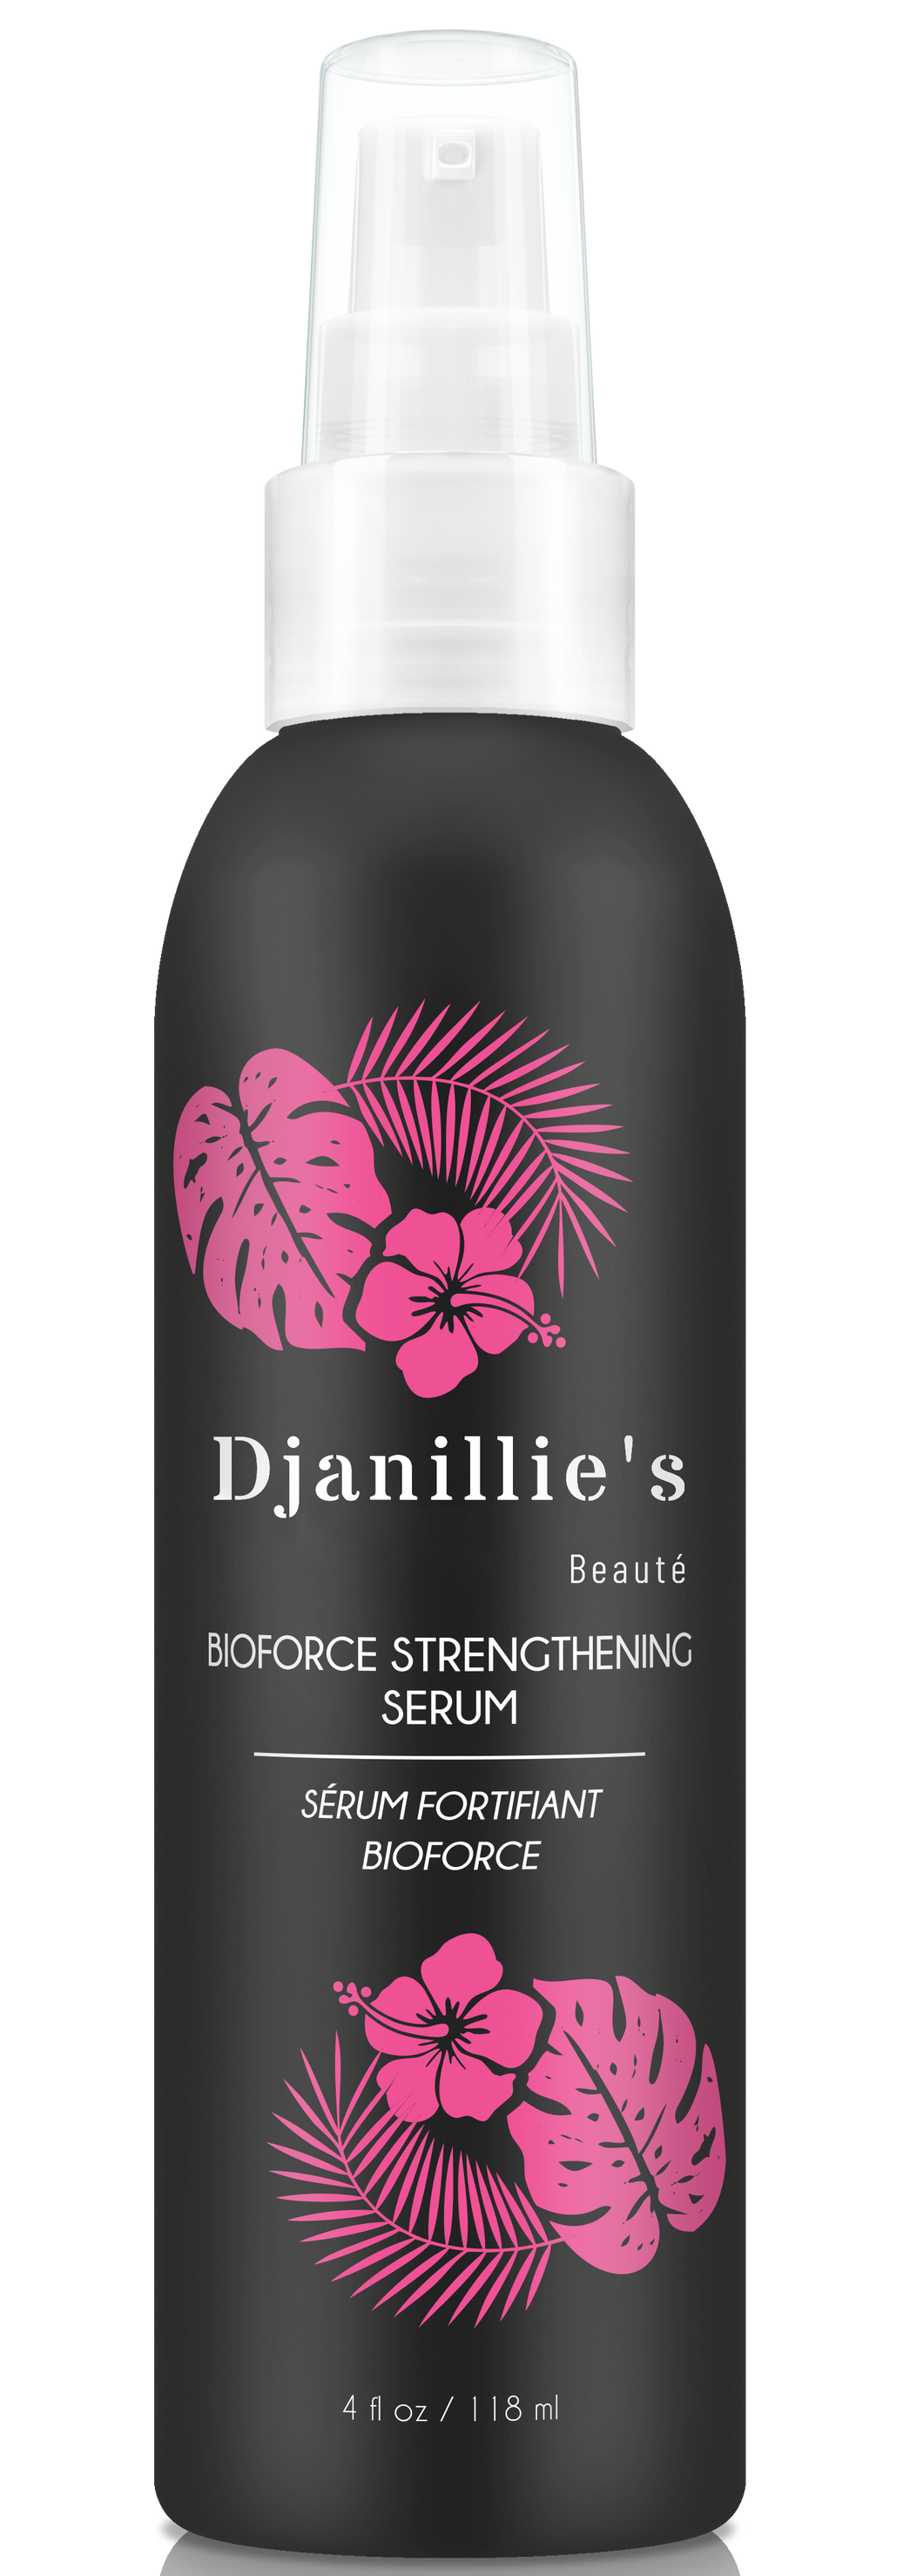 BioForce Strengthening Serum - Djanillie's Beauté